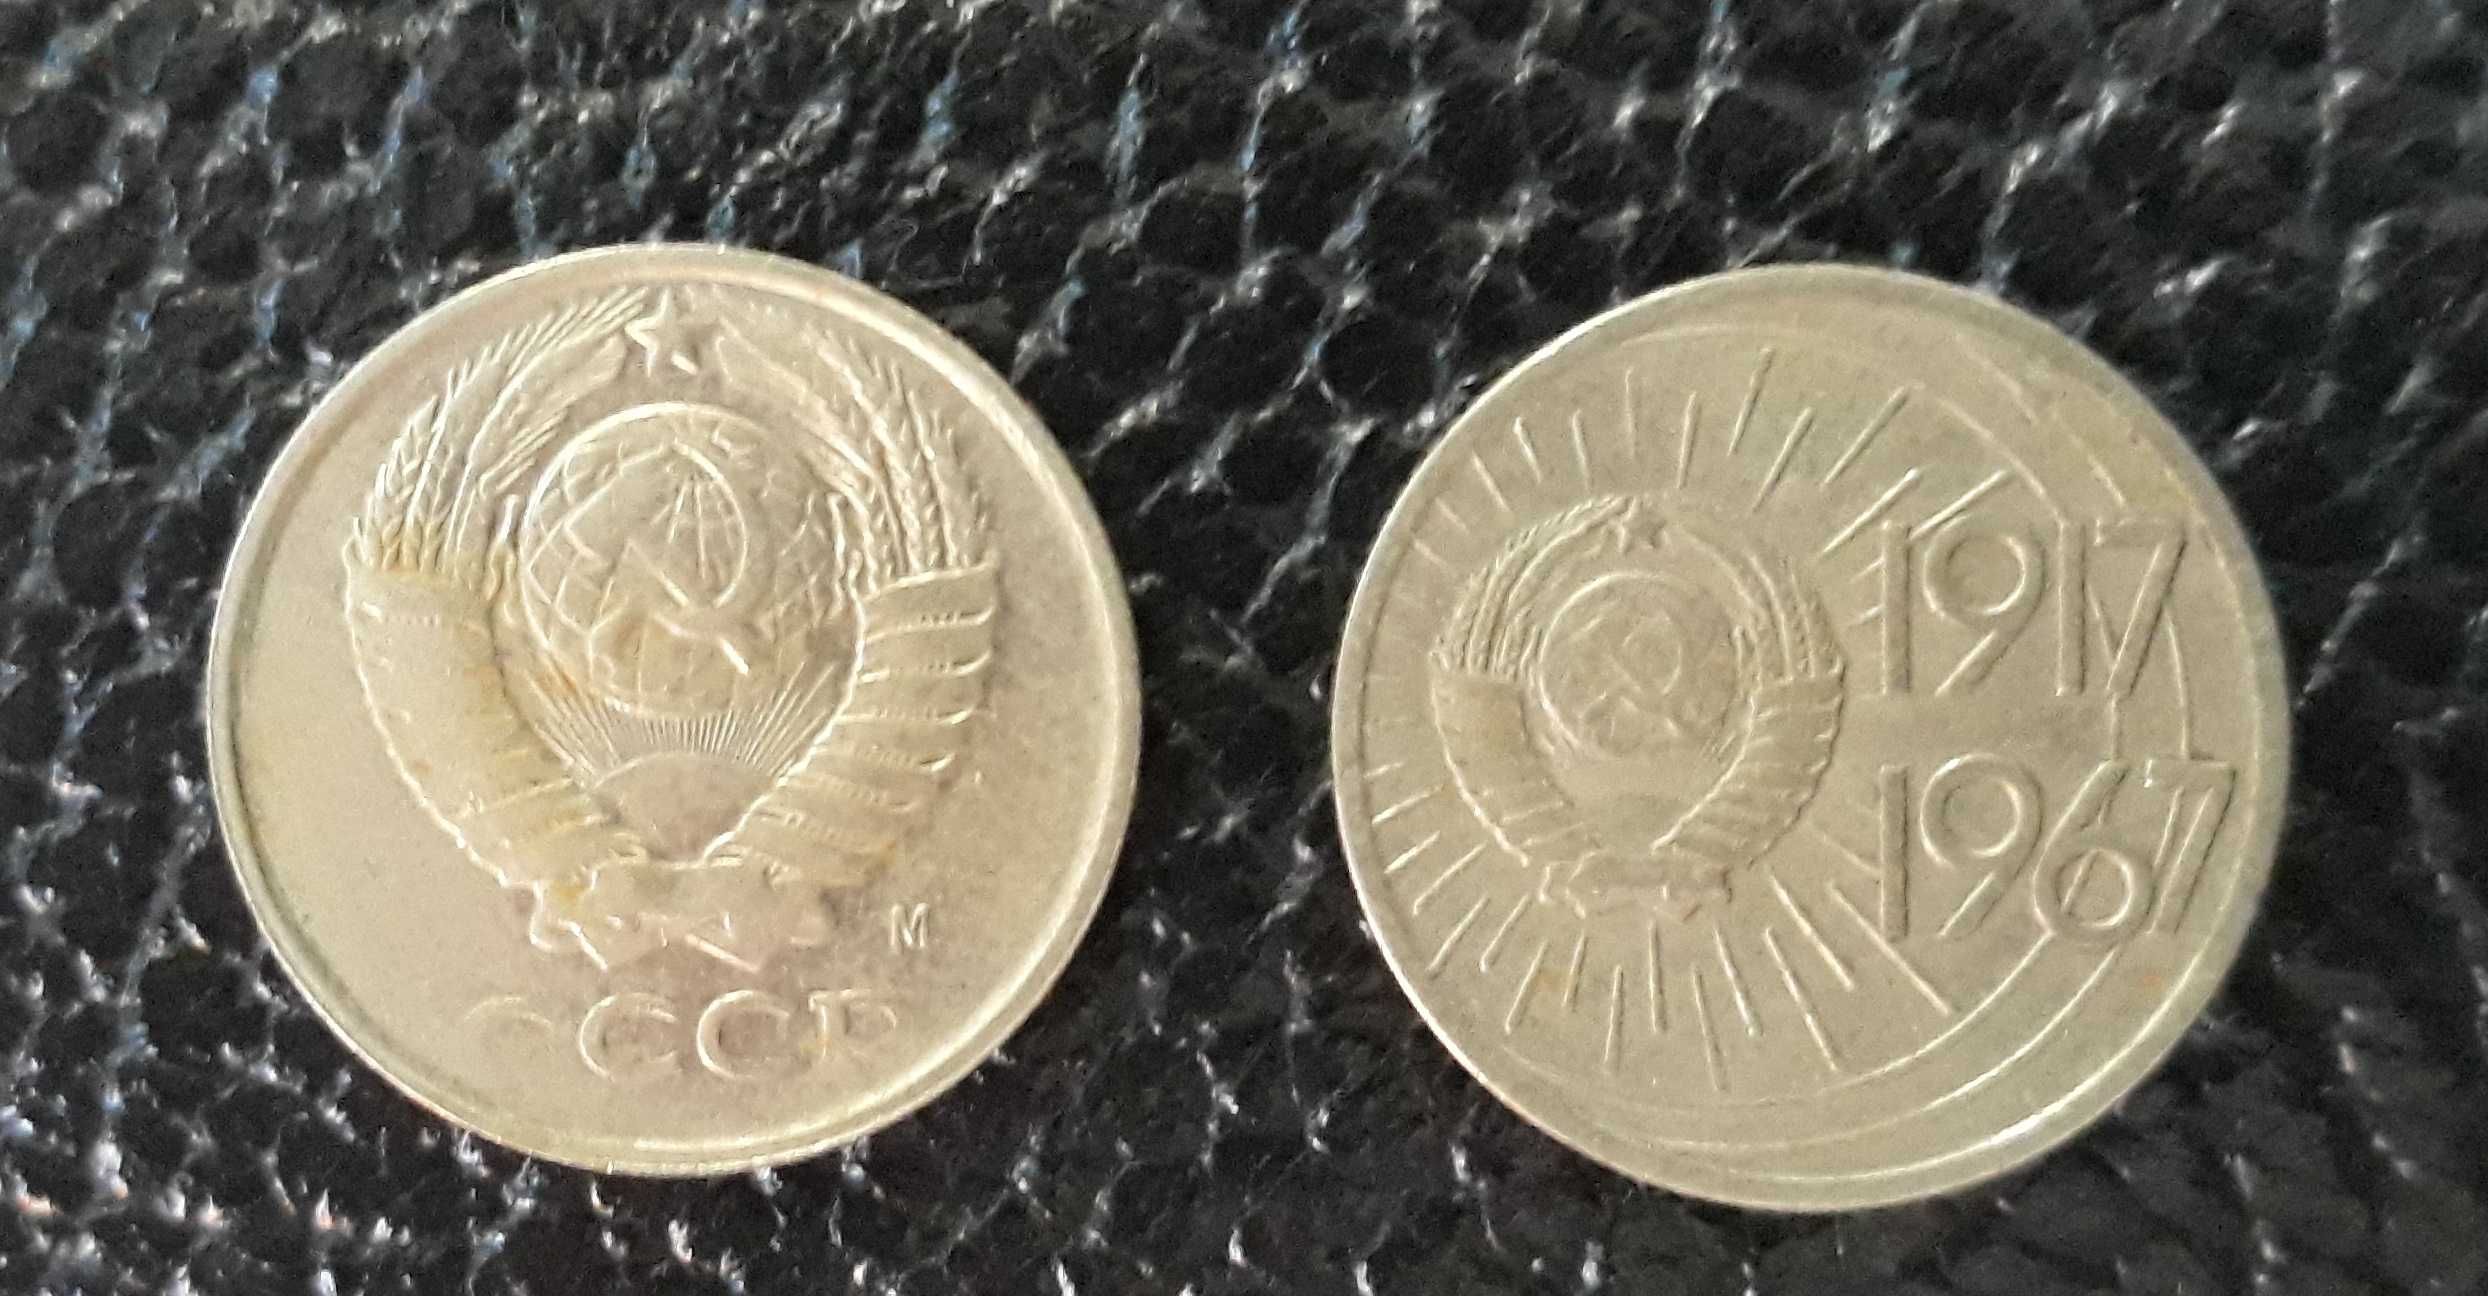 Монеты СССР монеты юбилейные монеты 1991 год ( М ) монеты СССР копейки